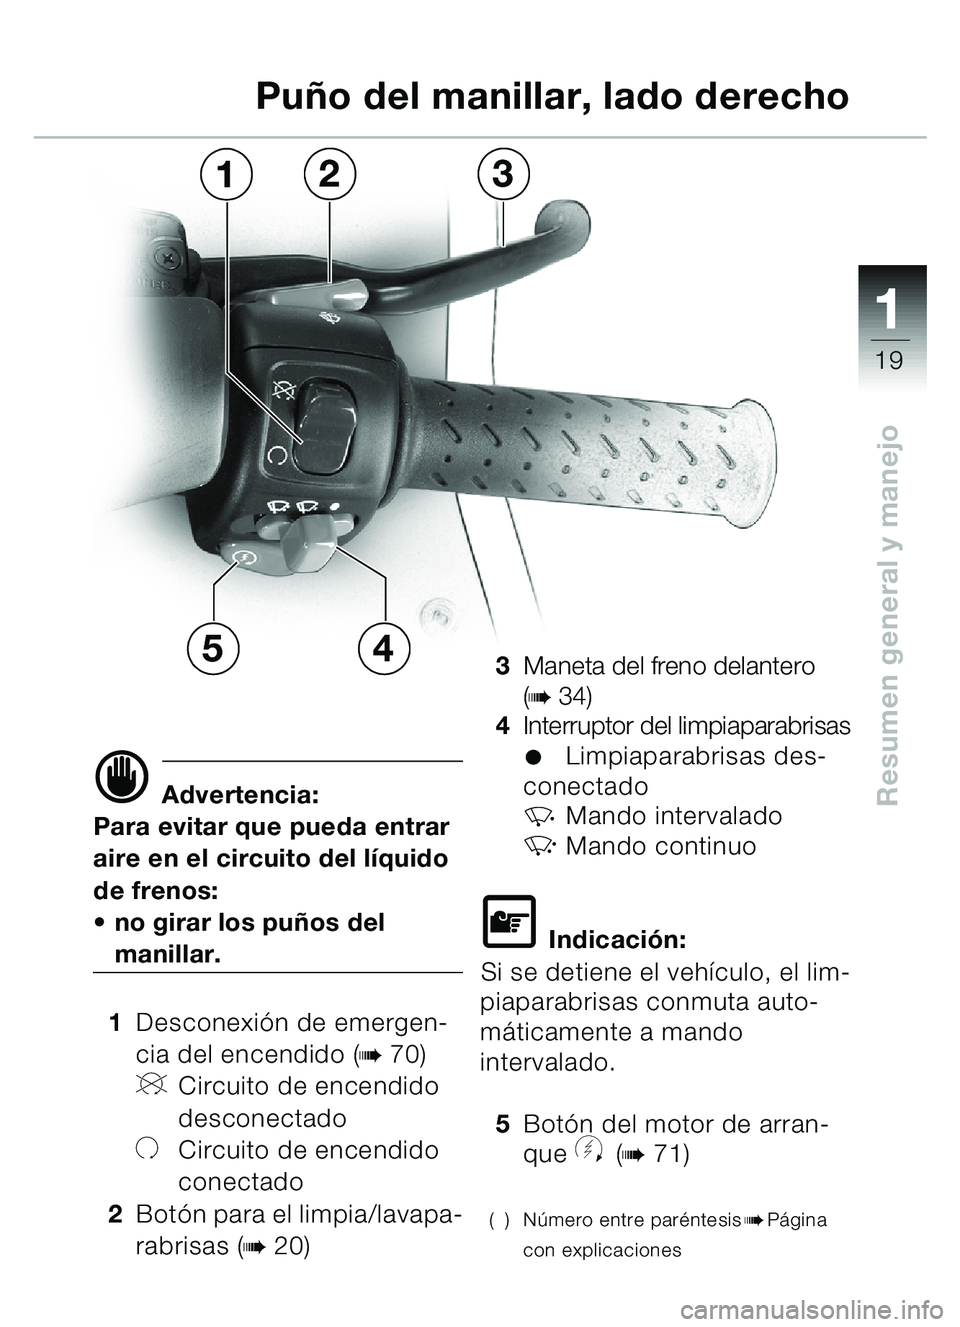 BMW MOTORRAD C1 2000  Manual de instrucciones (in Spanish) 111
19
Resumen general y manejod Advertencia:
Para evitar que pueda entrar 
aire en el circuito del l íquido 
de frenos:
 no girar los pu ños del 
manillar.
1 Desconexi ón de emergen-
cia del ence